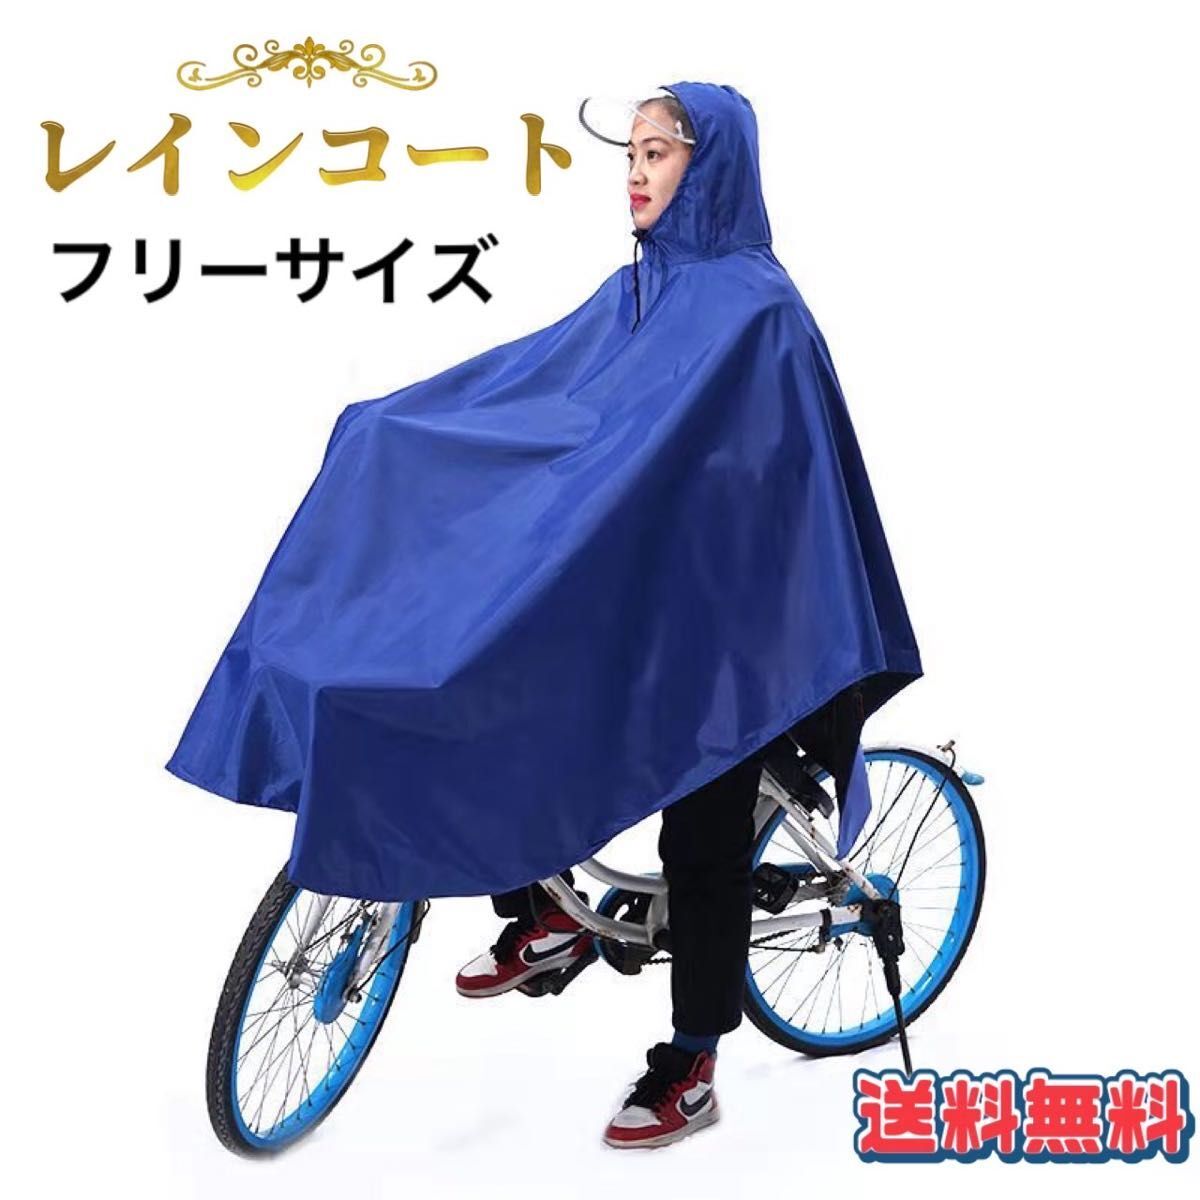 [ сейчас только. SALE цена ] плащ пончо велосипед для непромокаемая одежда прозрачный козырек ходить на работу посещение школы ткань Kappa водонепроницаемый для мужчин и женщин 